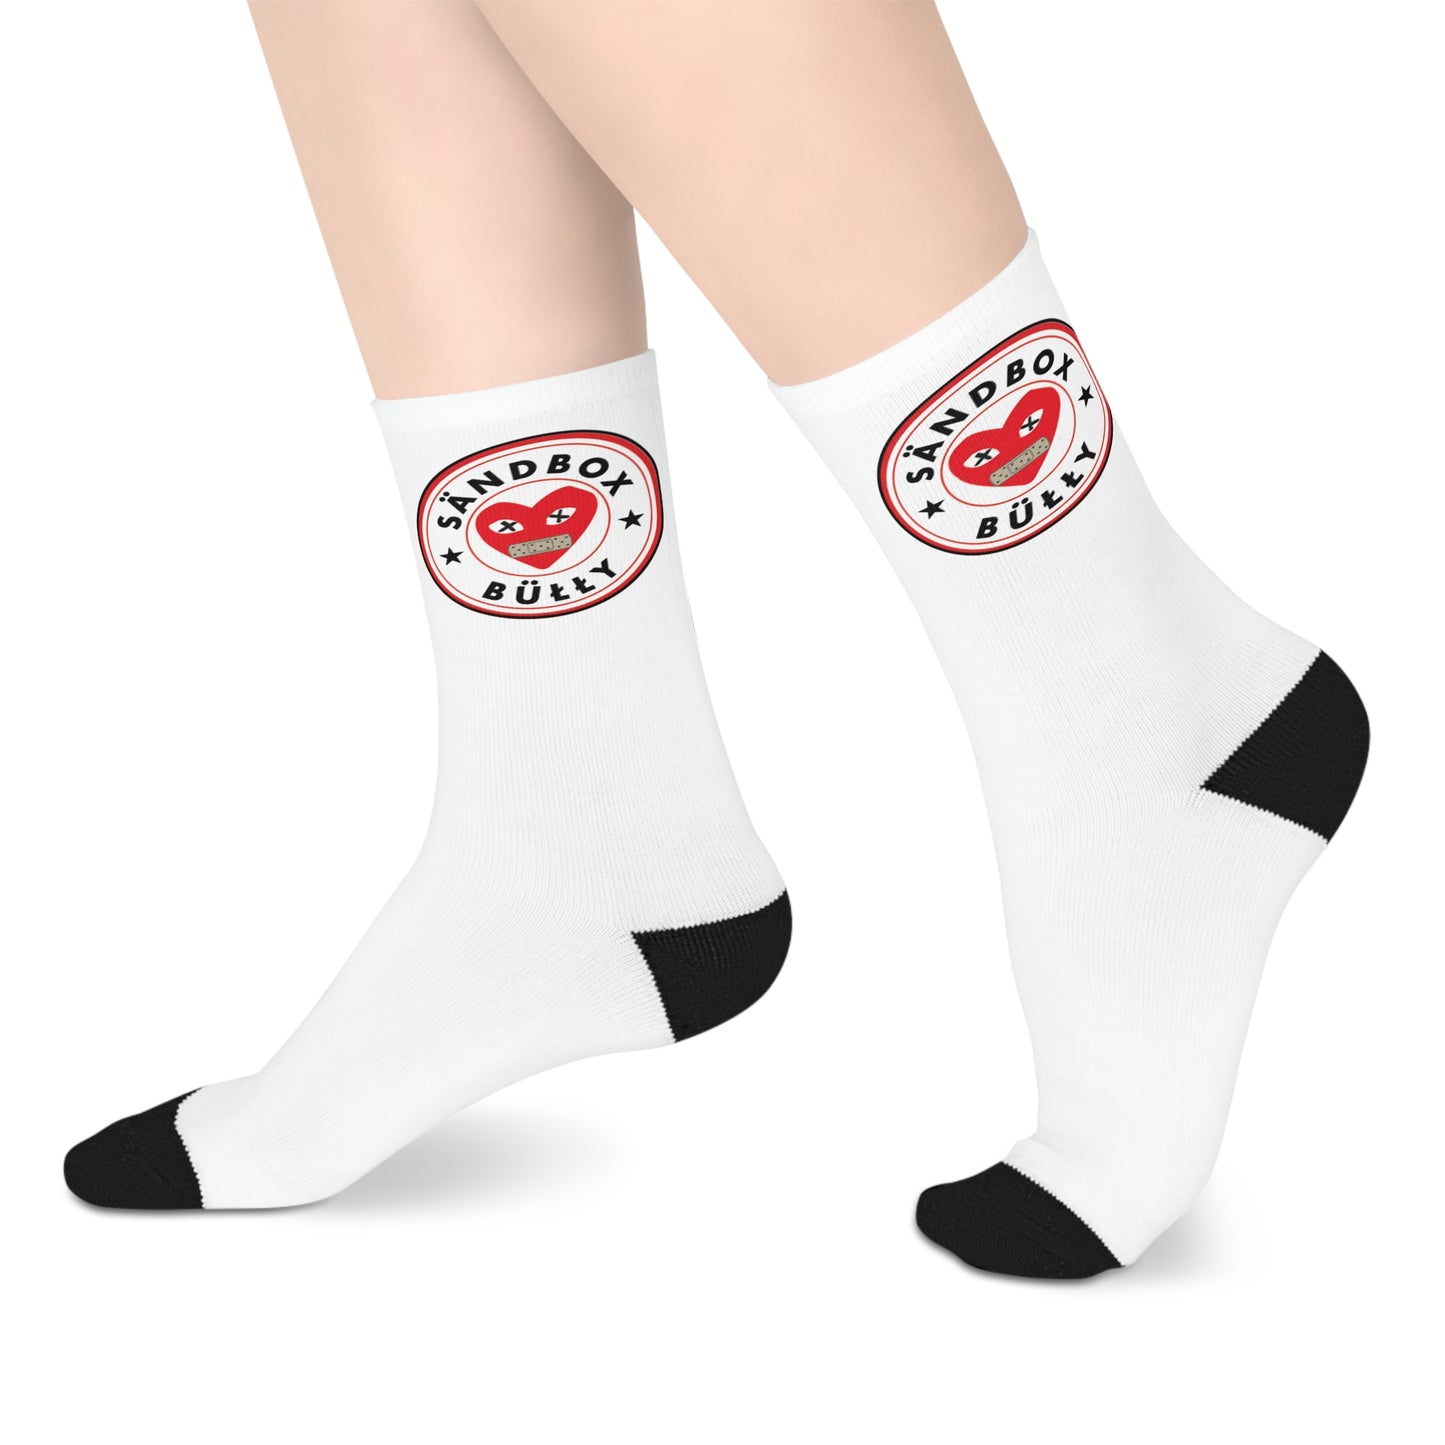 Sandboxbully Logo Mid-length Socks